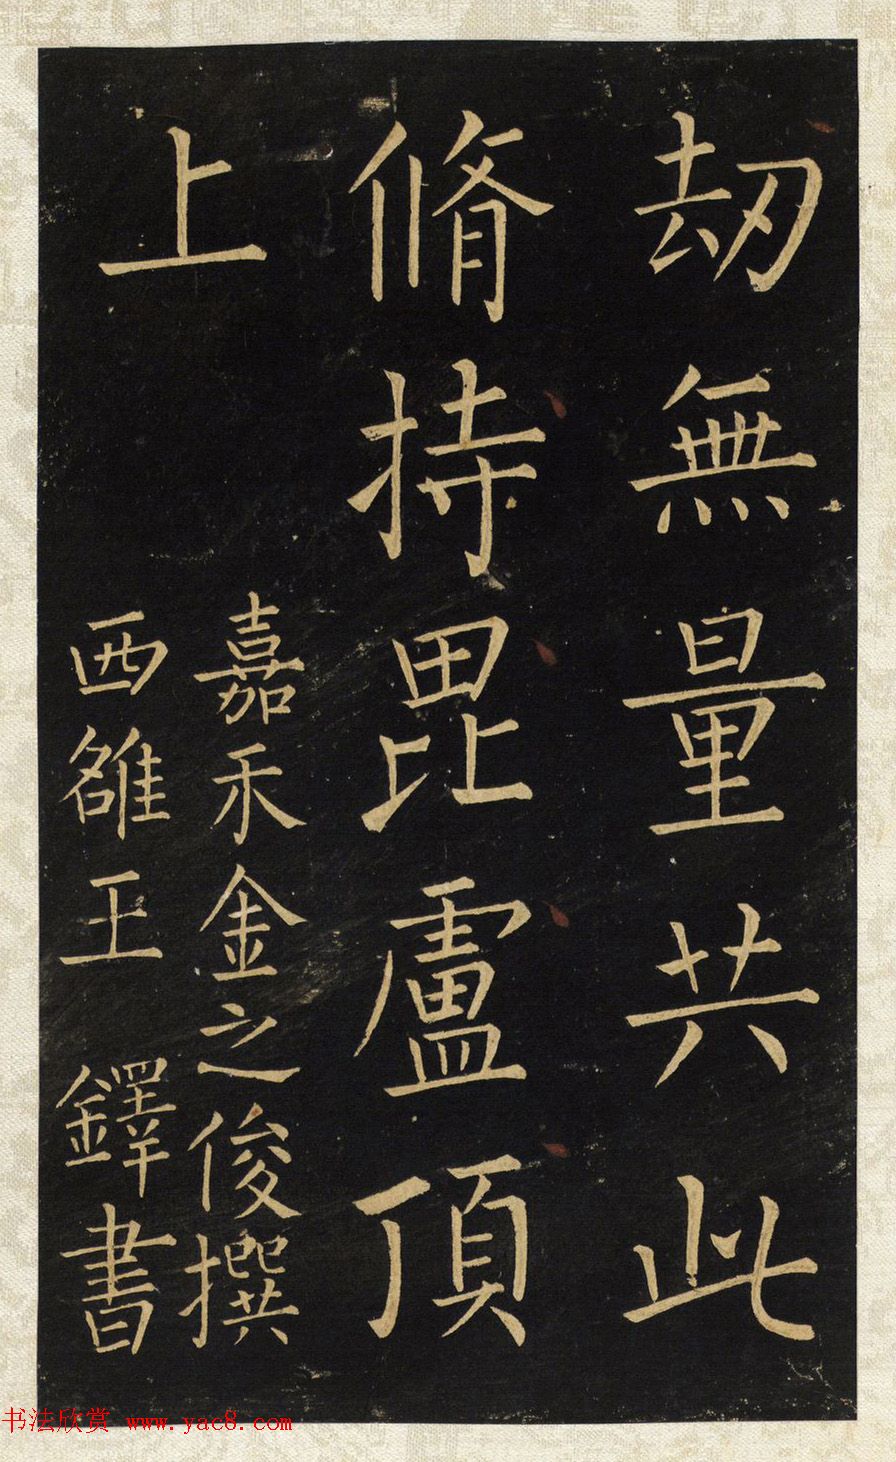 王铎唯一传世的柳体楷书《延寿寺碑》